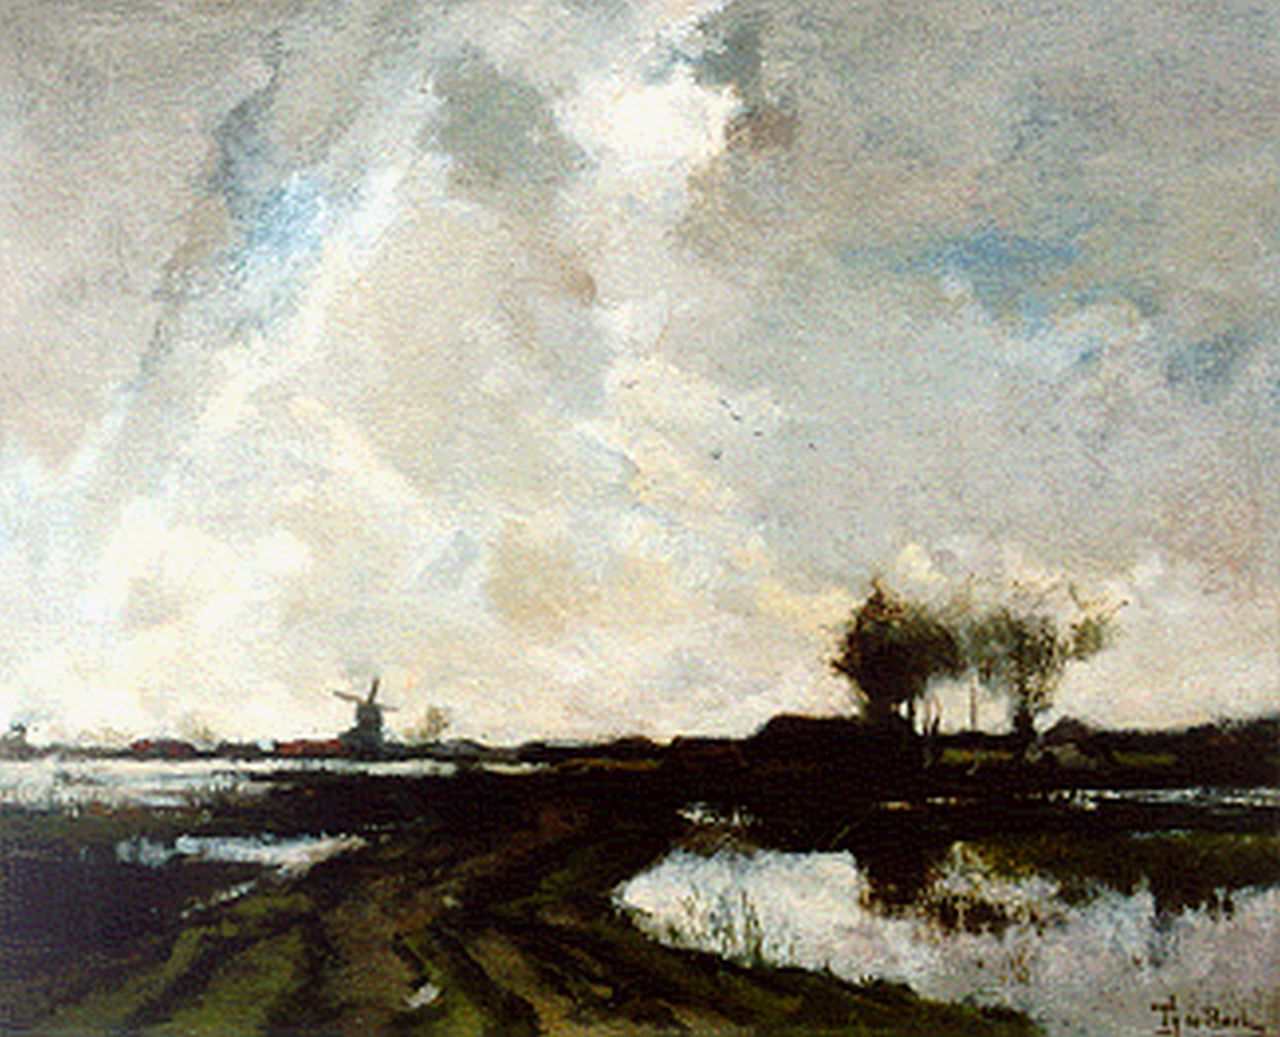 Bock T.E.A. de | Théophile Emile Achille de Bock, Polderlandschap, olieverf op doek 37,0 x 45,7 cm, gesigneerd rechtsonder